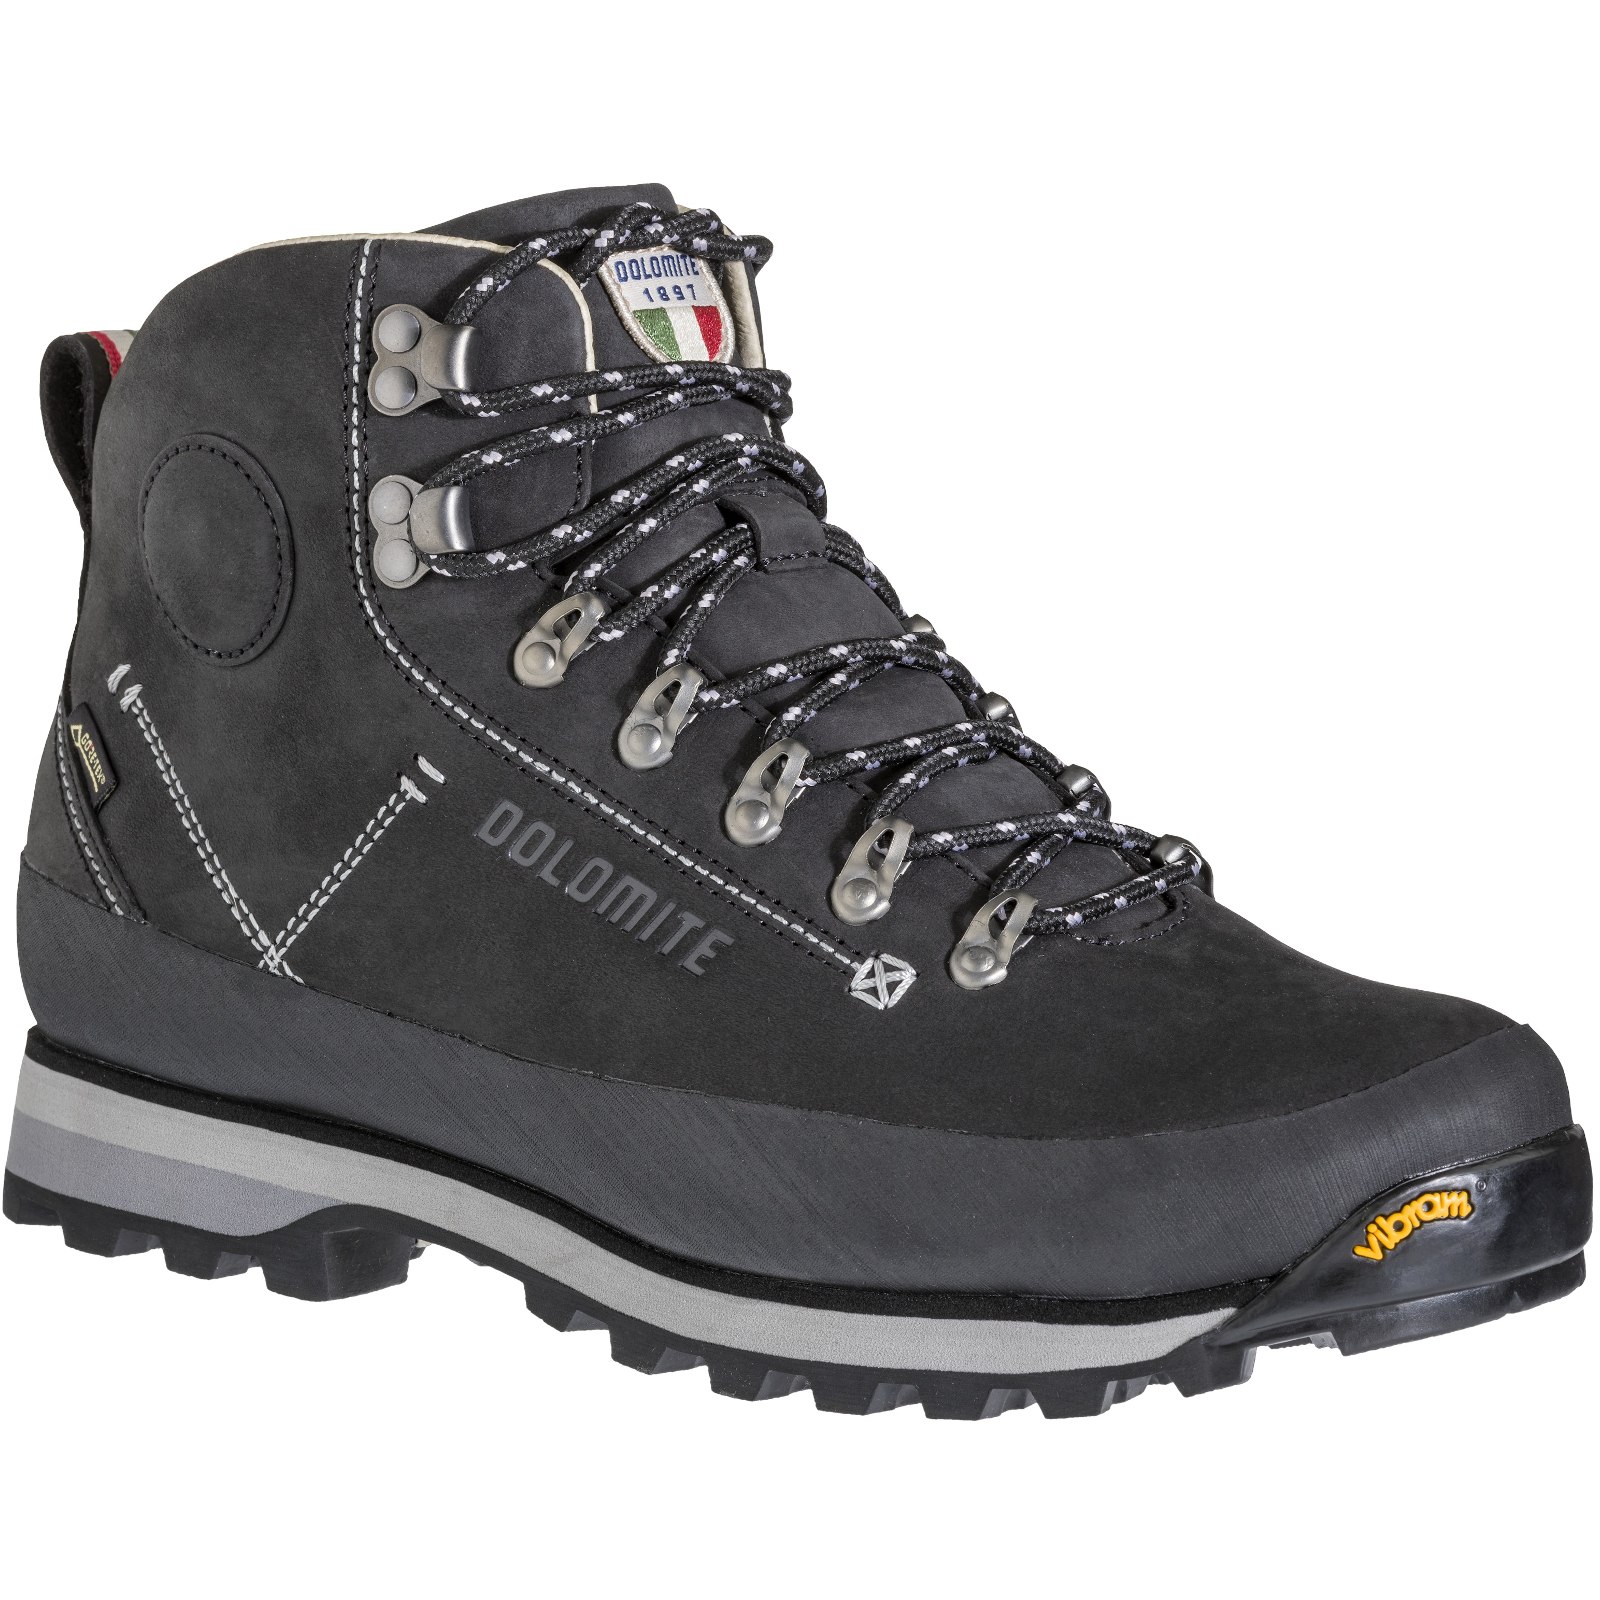 Produktbild von Dolomite 54 Trek GORE-TEX Schuhe Herren - schwarz